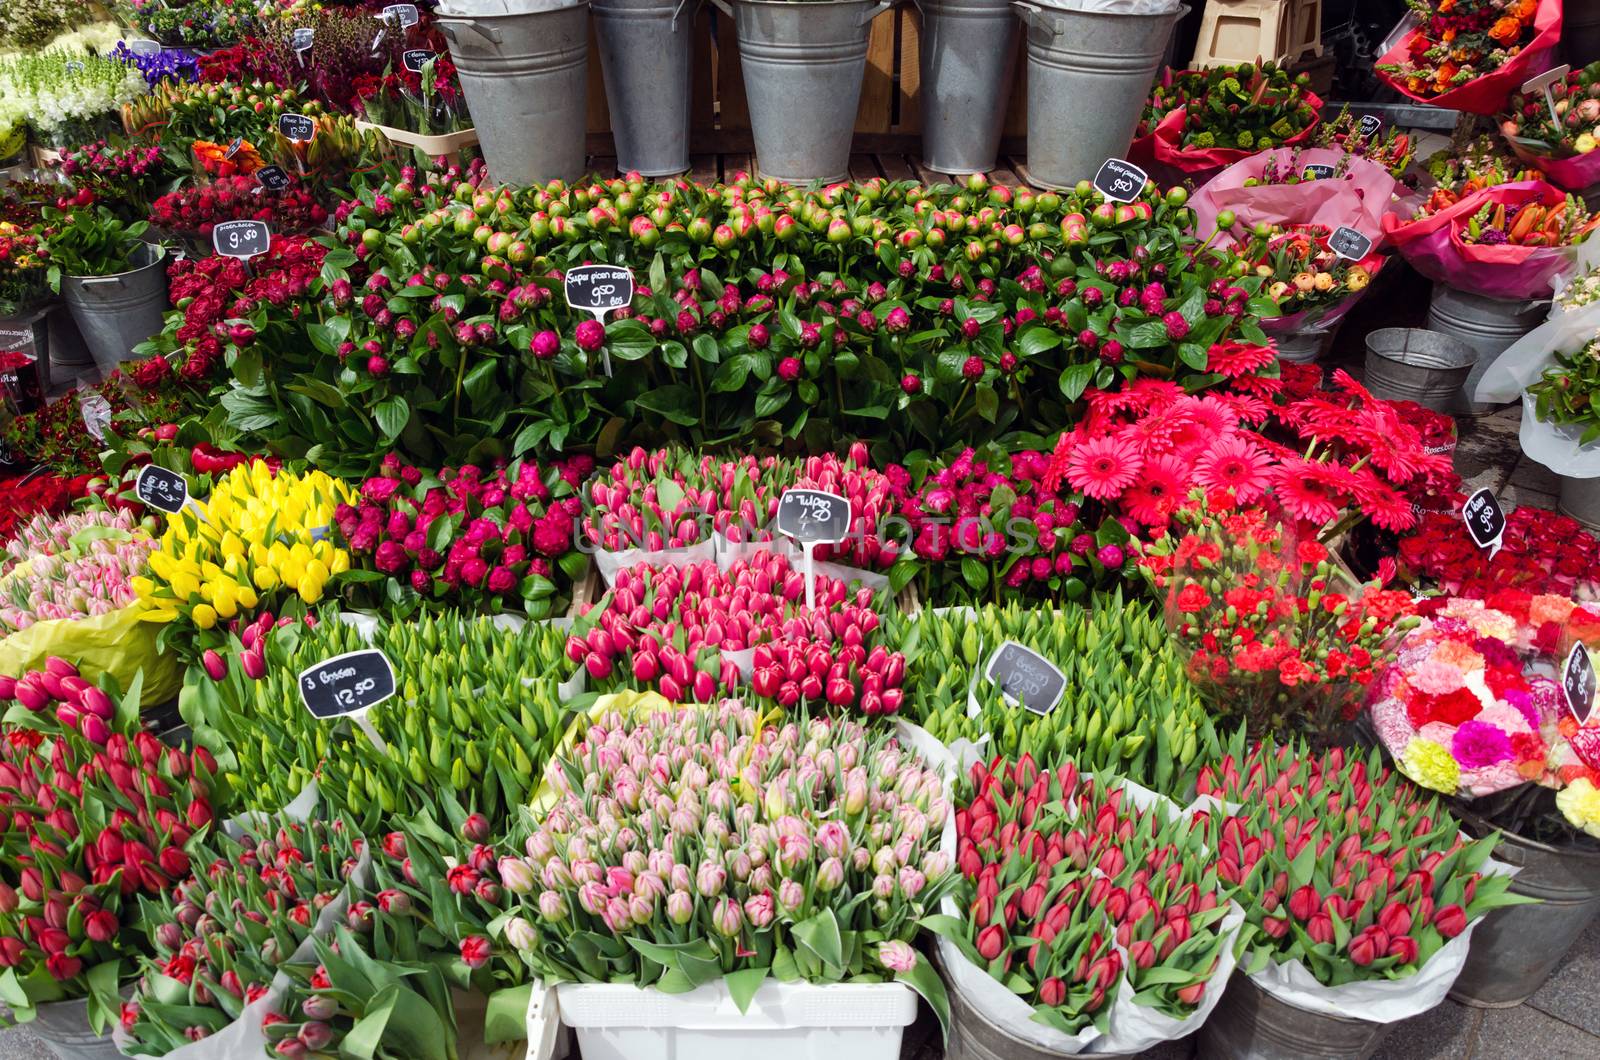 Flower shop in Rotterdam, Netherlands. 